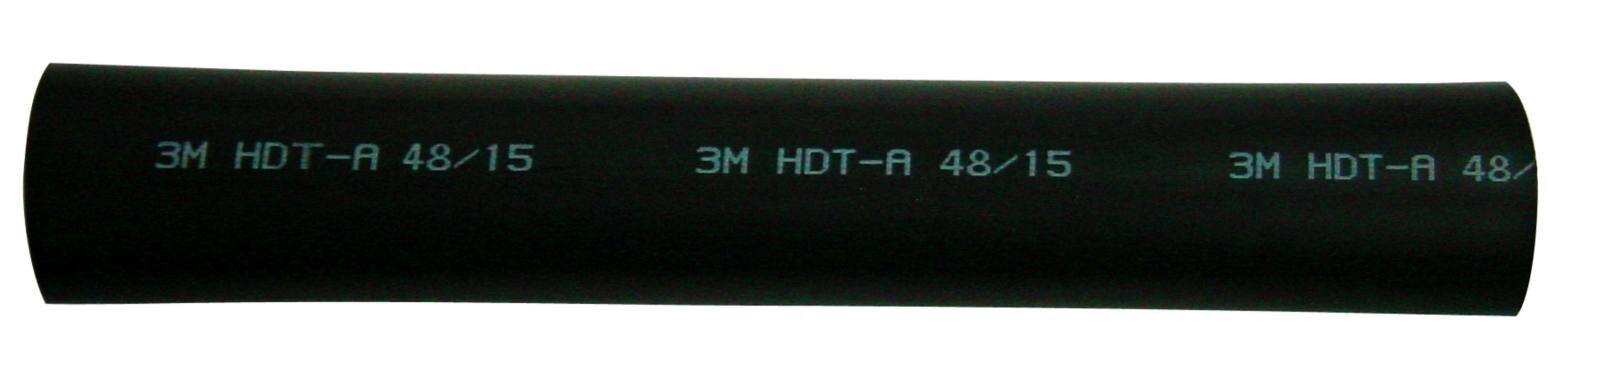 3M HDT-A Paksuseinäinen lämpökutisteputki liimalla, musta, 38/12 mm, 1 m